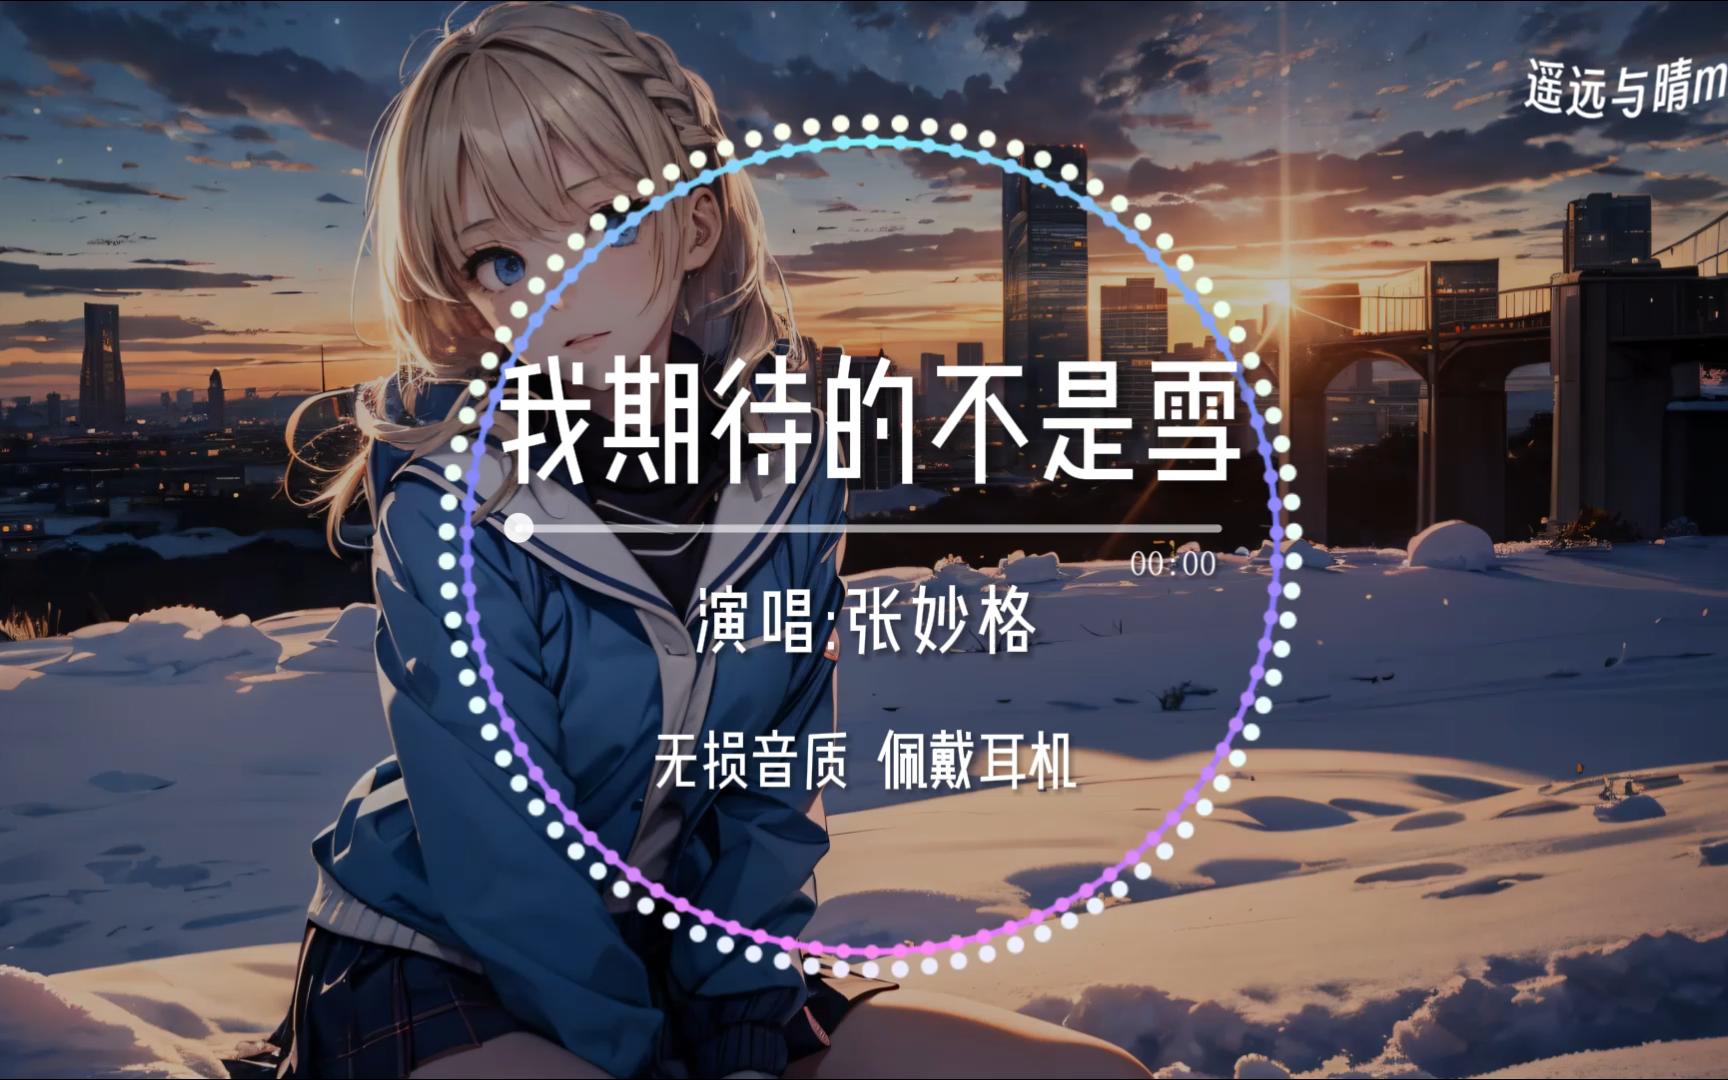 [图]【无损音质】《我期待的不是雪》-张妙格“我期待的不是雪 而是有你的冬天~”